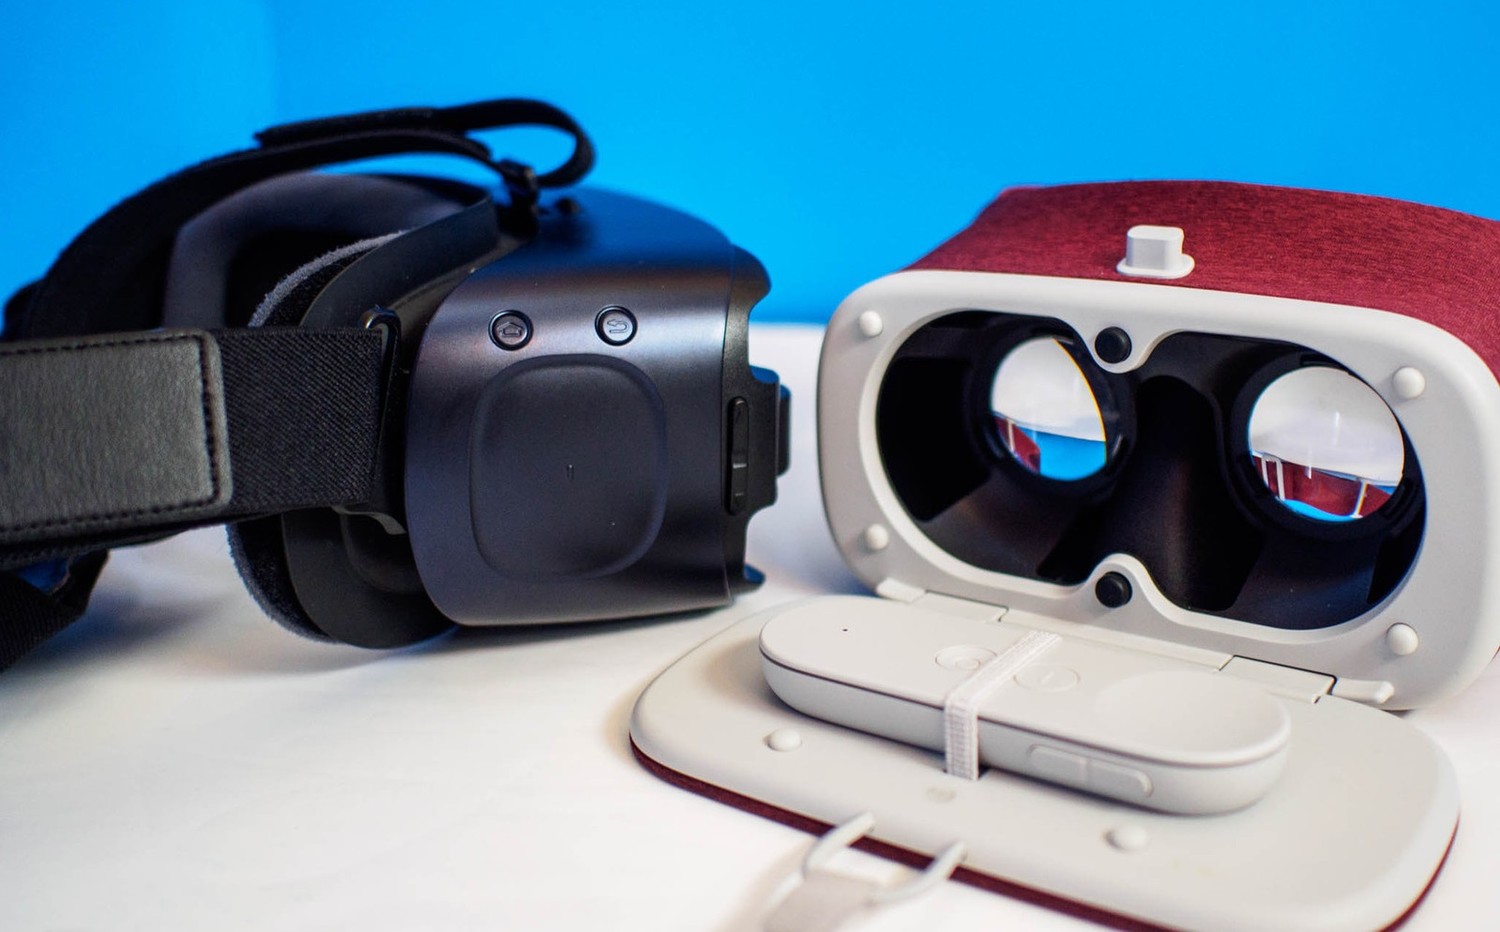 Виртуальные очки для смартфона vr. Daydream очки виртуальной реальности. Очки вертулярной реальности. VRG Pro + виртуальные очки. VR шлем ПРГ.